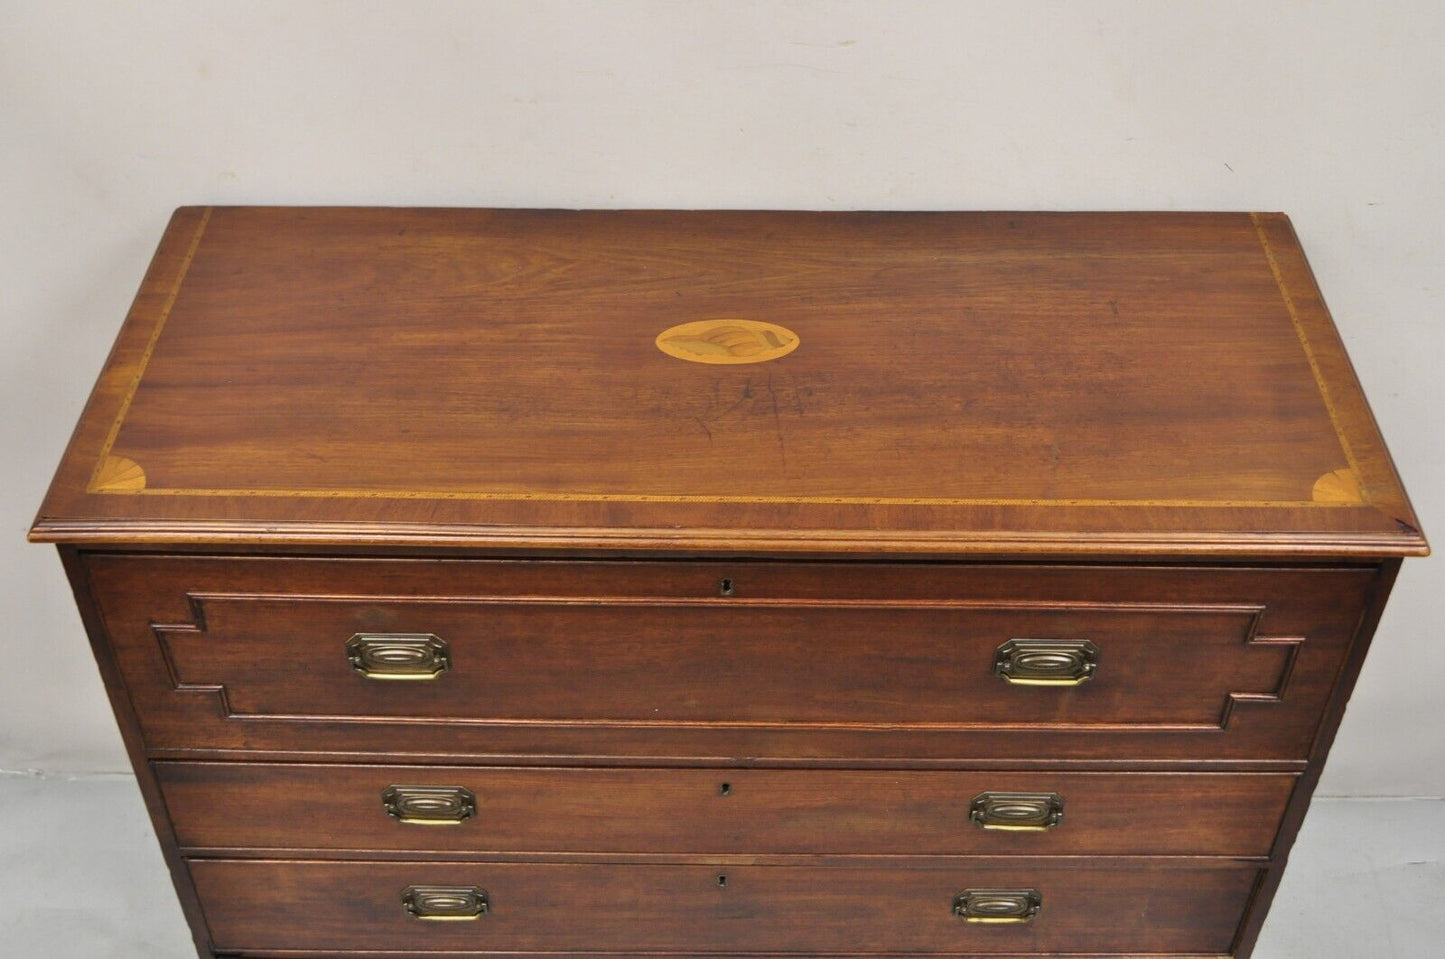 Antique English Edwardian Mahogany Chest of Drawers Secretary Desk Bureau